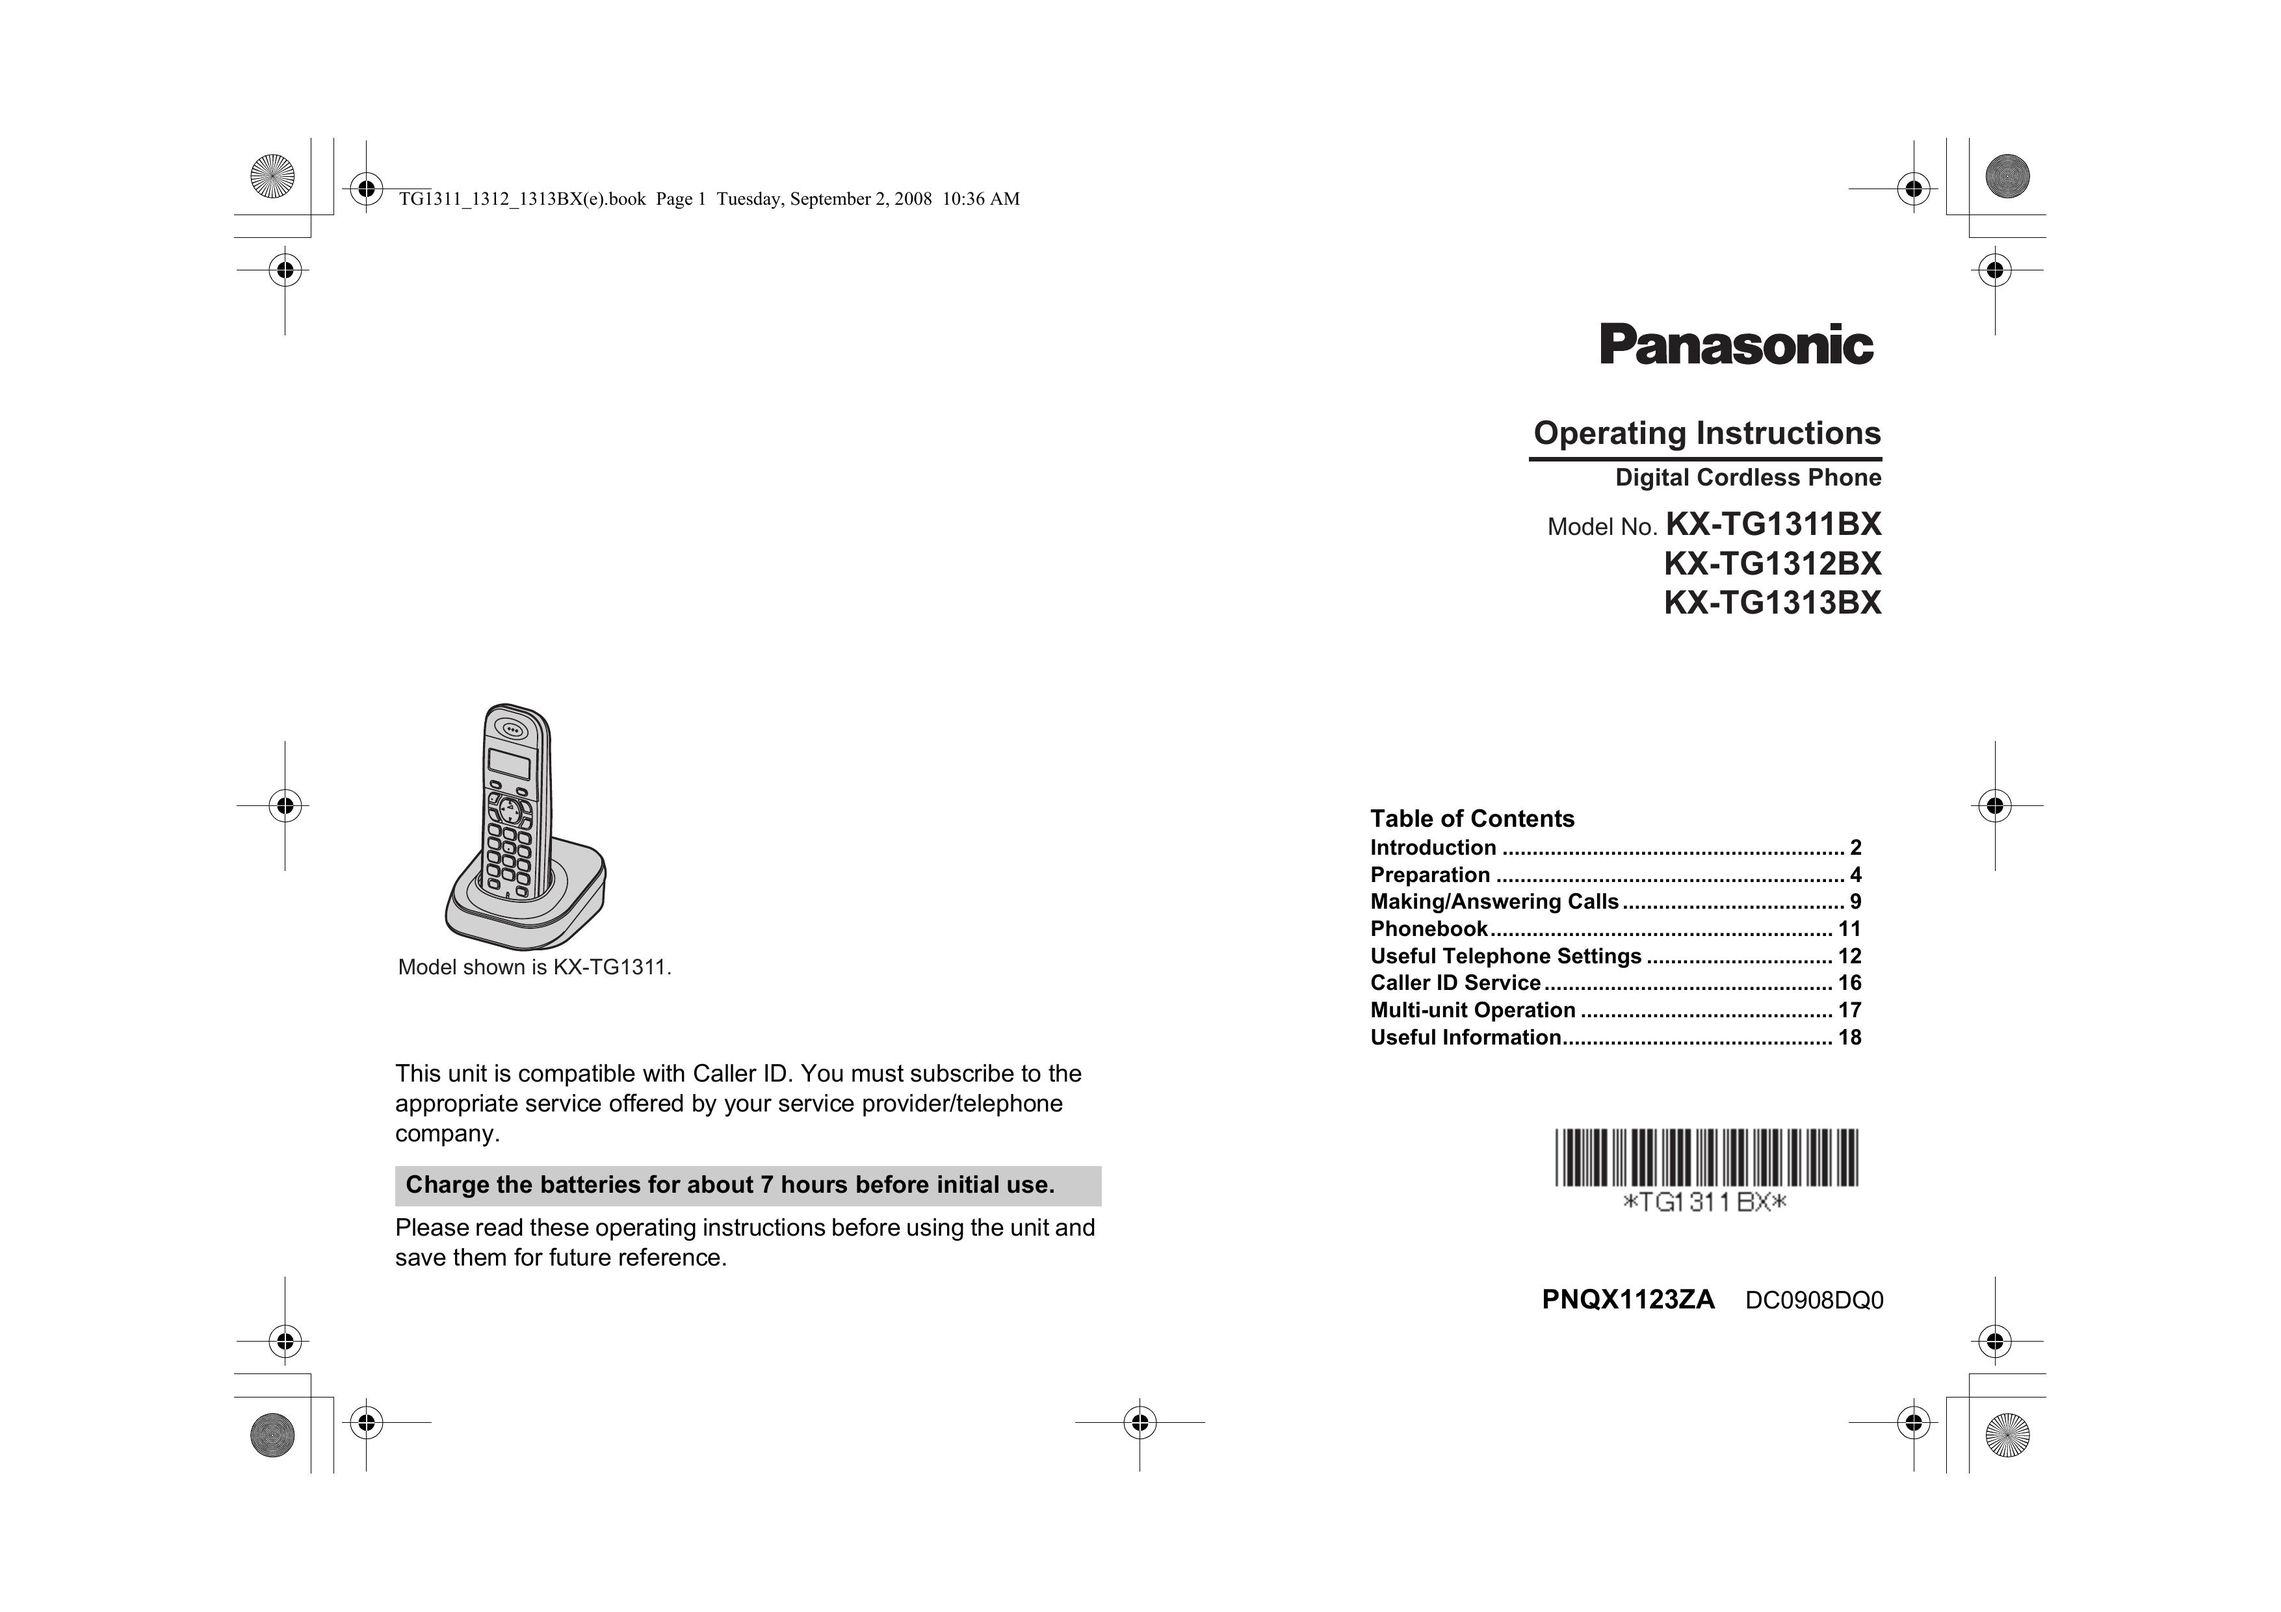 Panasonic KX-TG1313BX Cordless Telephone User Manual